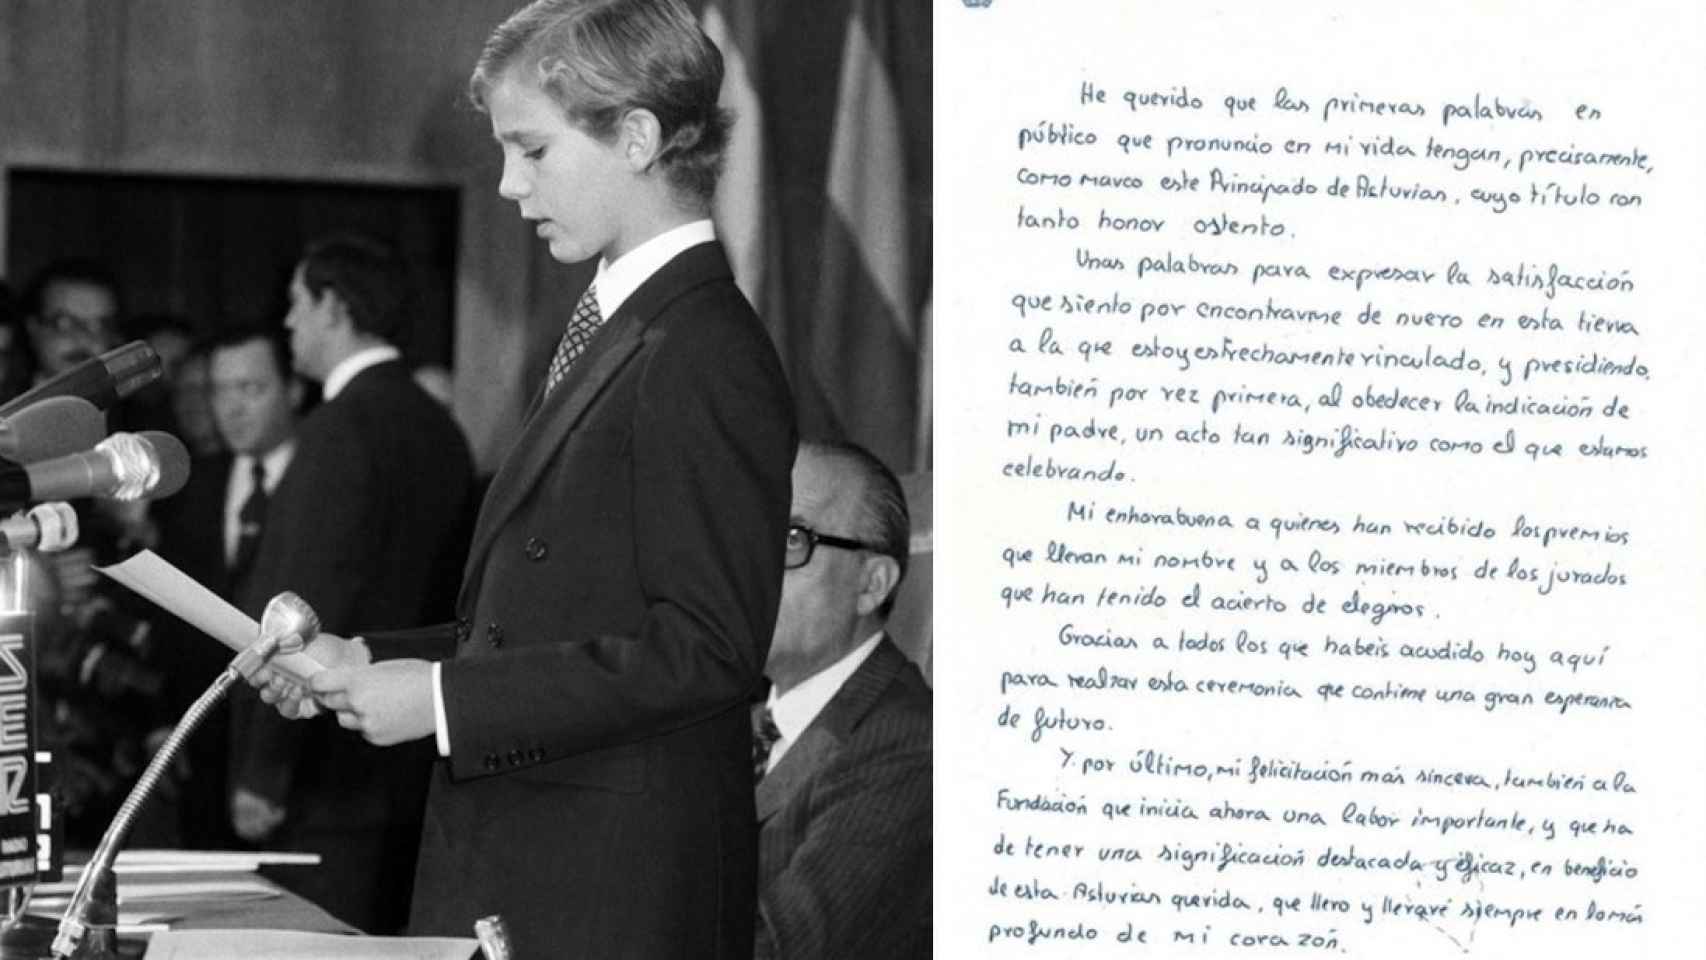 El discurso de Felipe en 1981 escrito de su puño y letra.